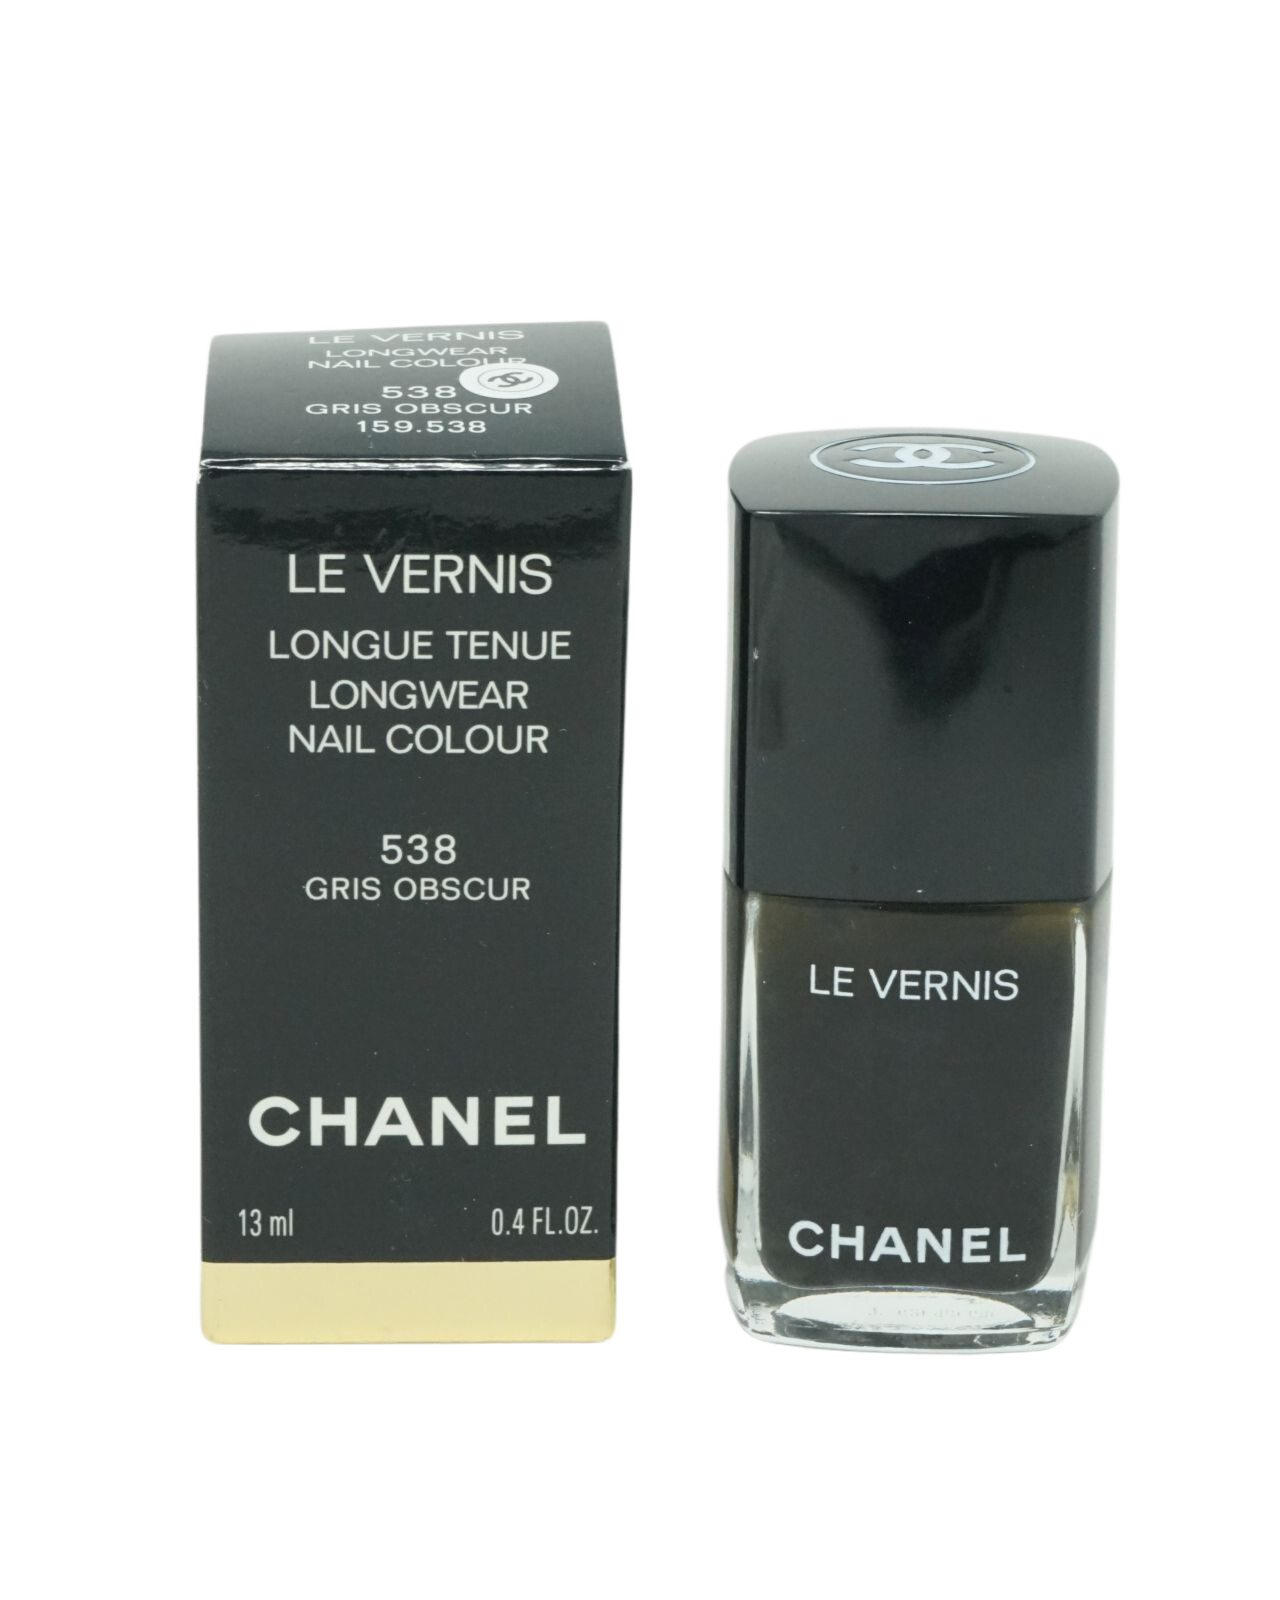 Chanel Le Vernis Longwear Nagellack 13ml 538 Gris Obscur